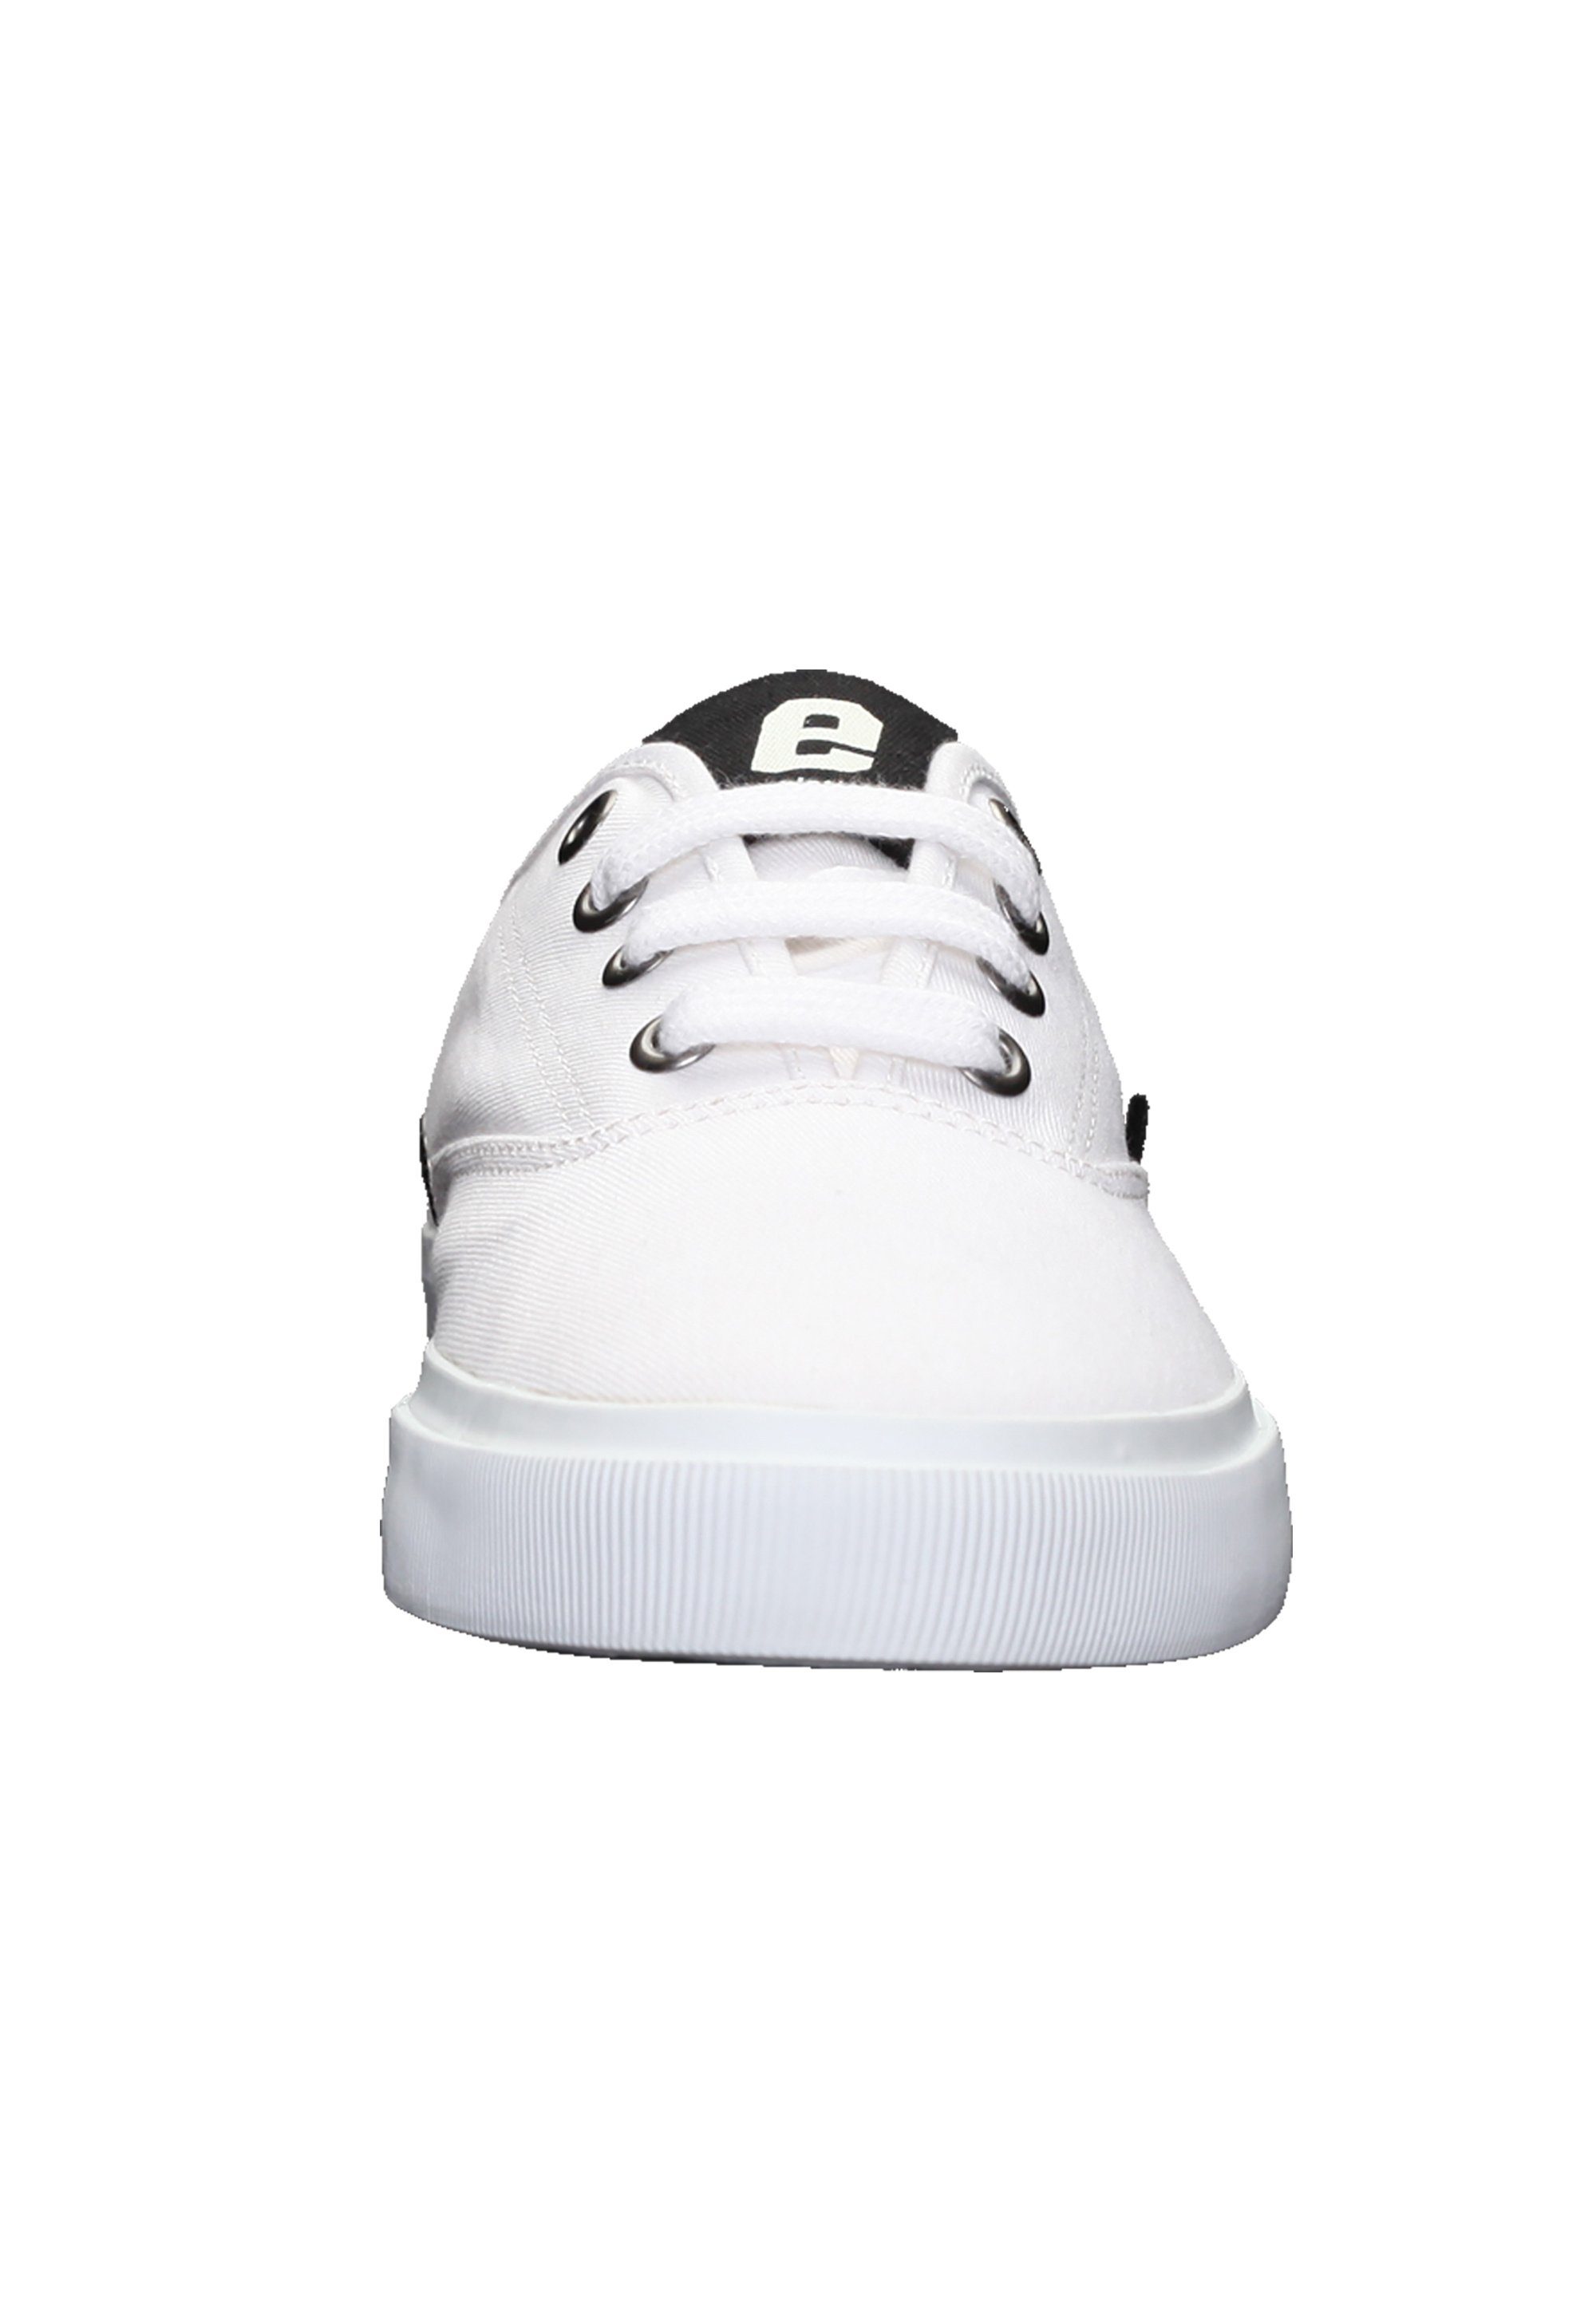 ETHLETIC Kole Sneaker Produkt Fairtrade just white